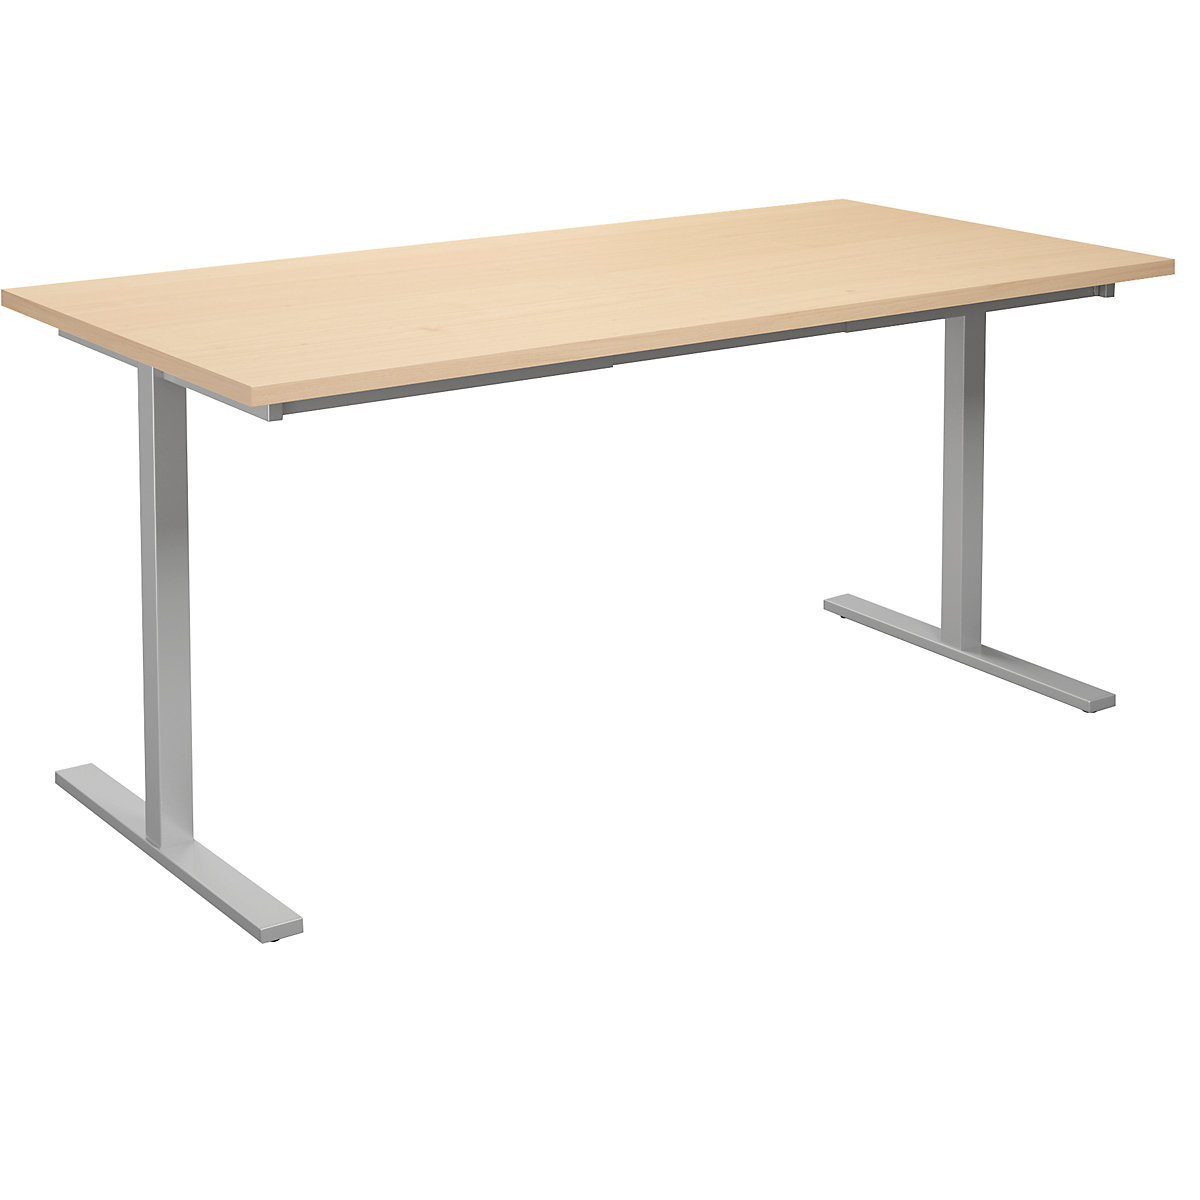 DUO-T multi-purpose desk, straight tabletop, WxD 1600 x 800 mm, birch, silver-4